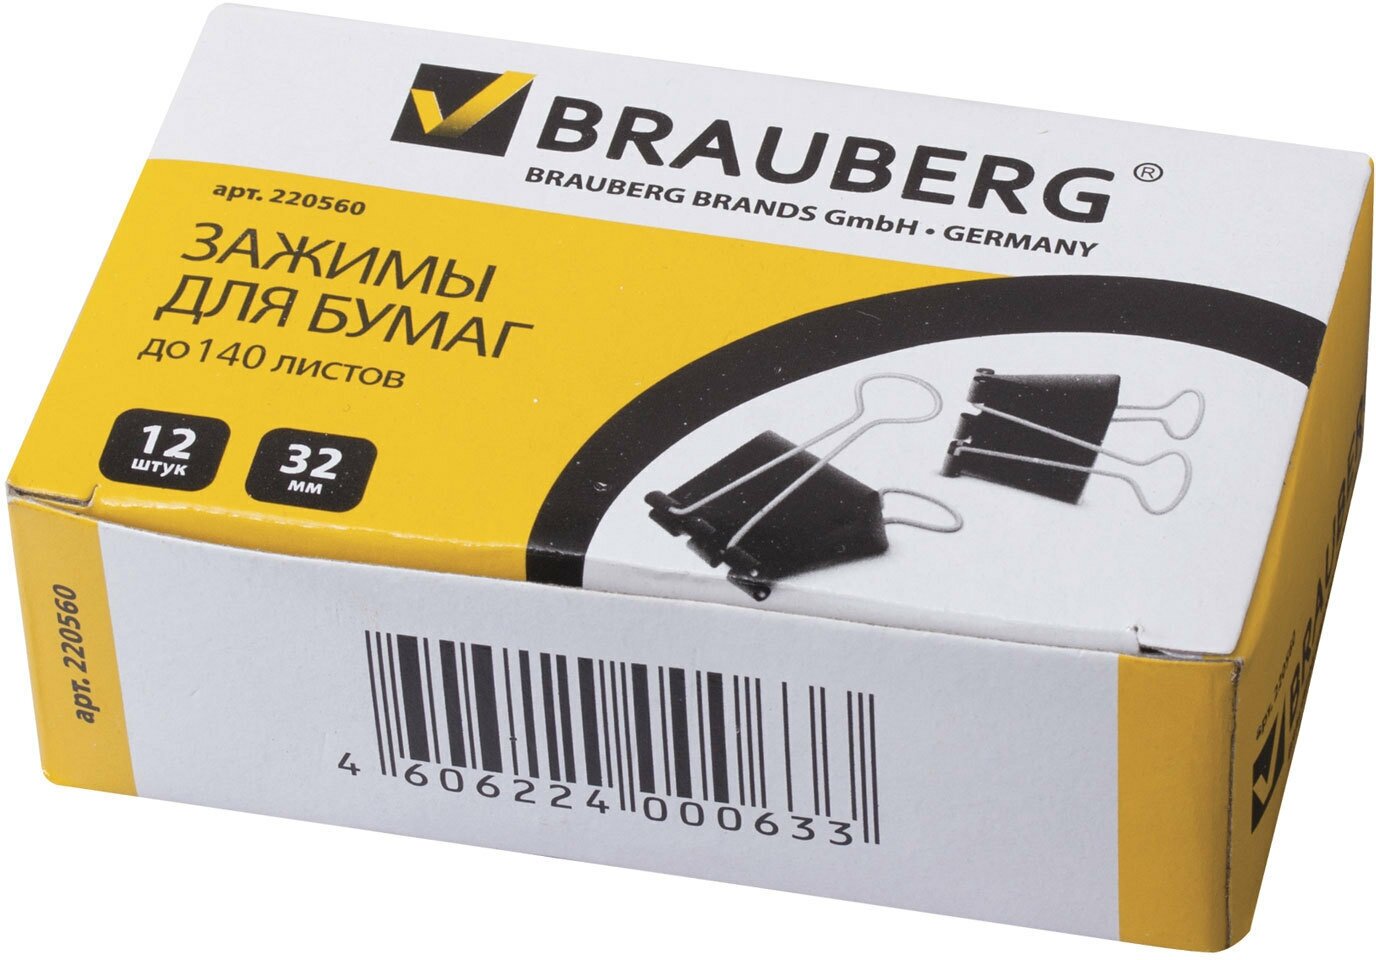 Зажимы для бумаг Brauberg 12 шт, 32 мм, на 140 листов, черные (220560)